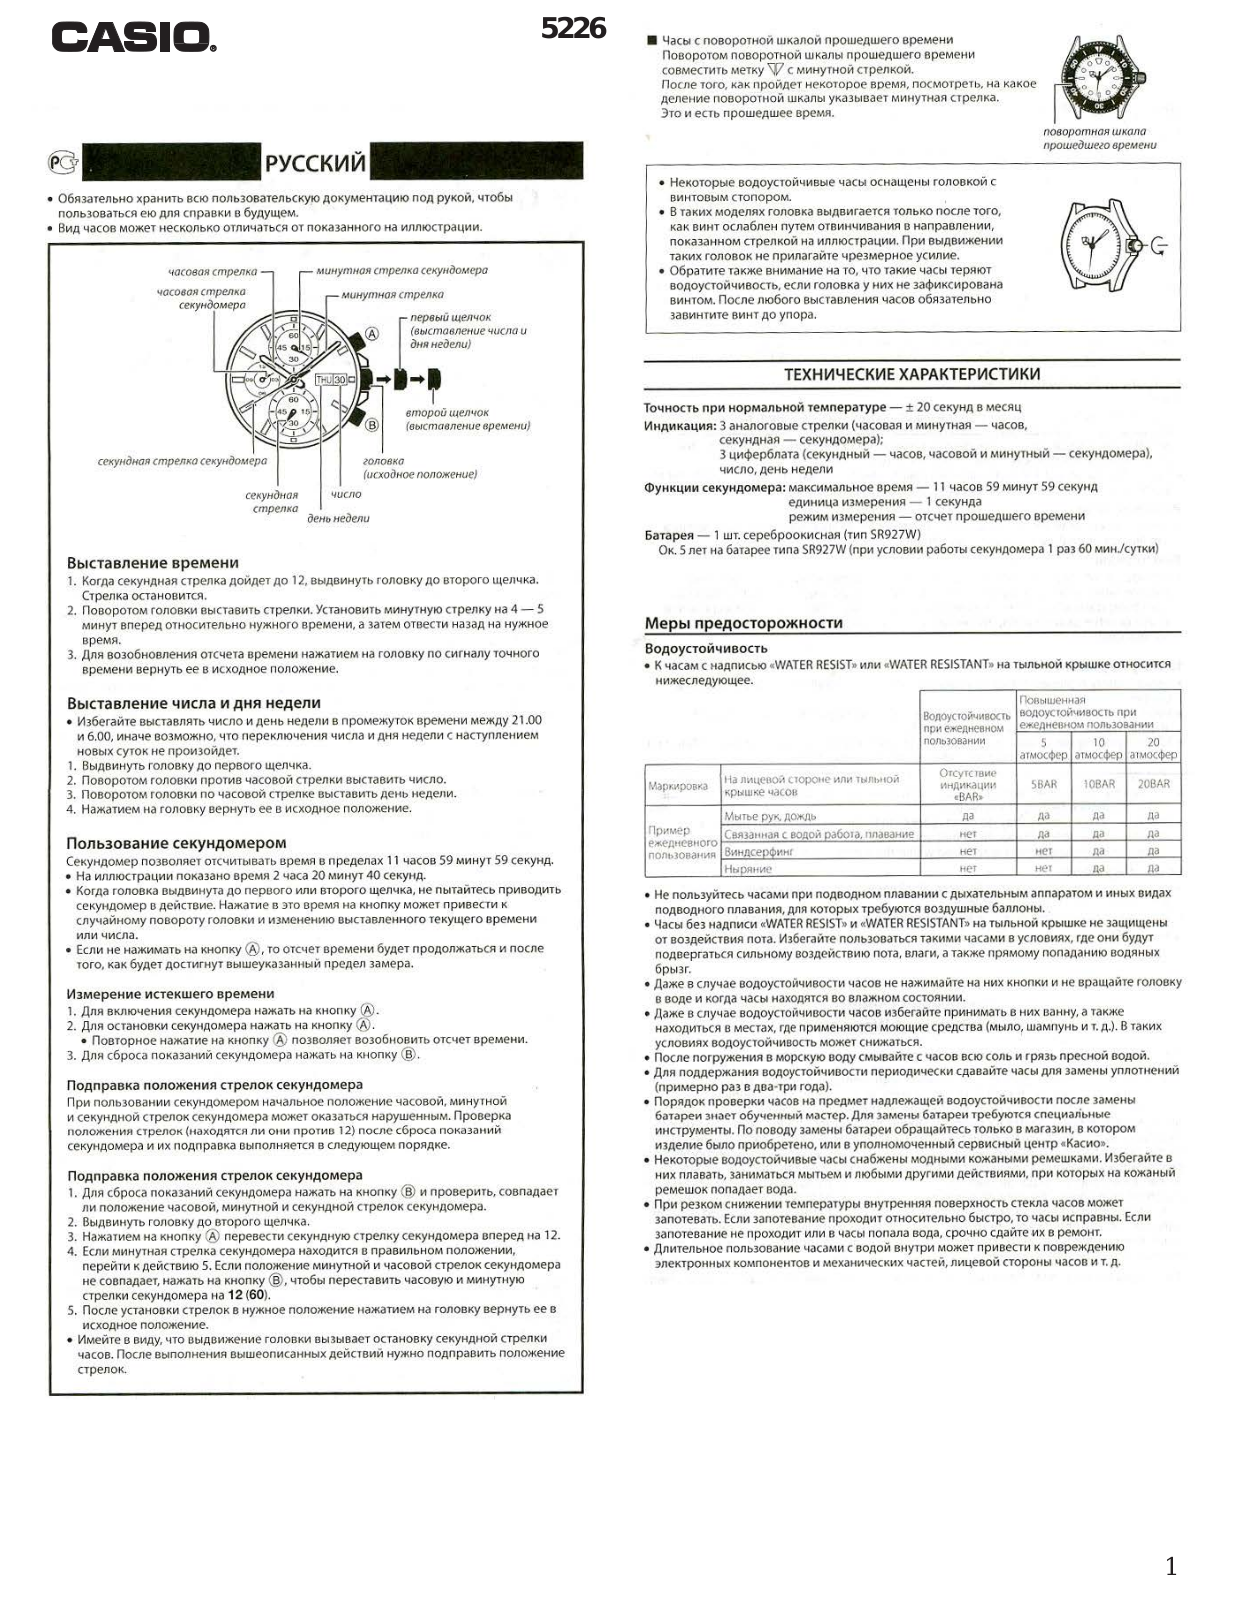 Casio EFR-549L-7A User Manual